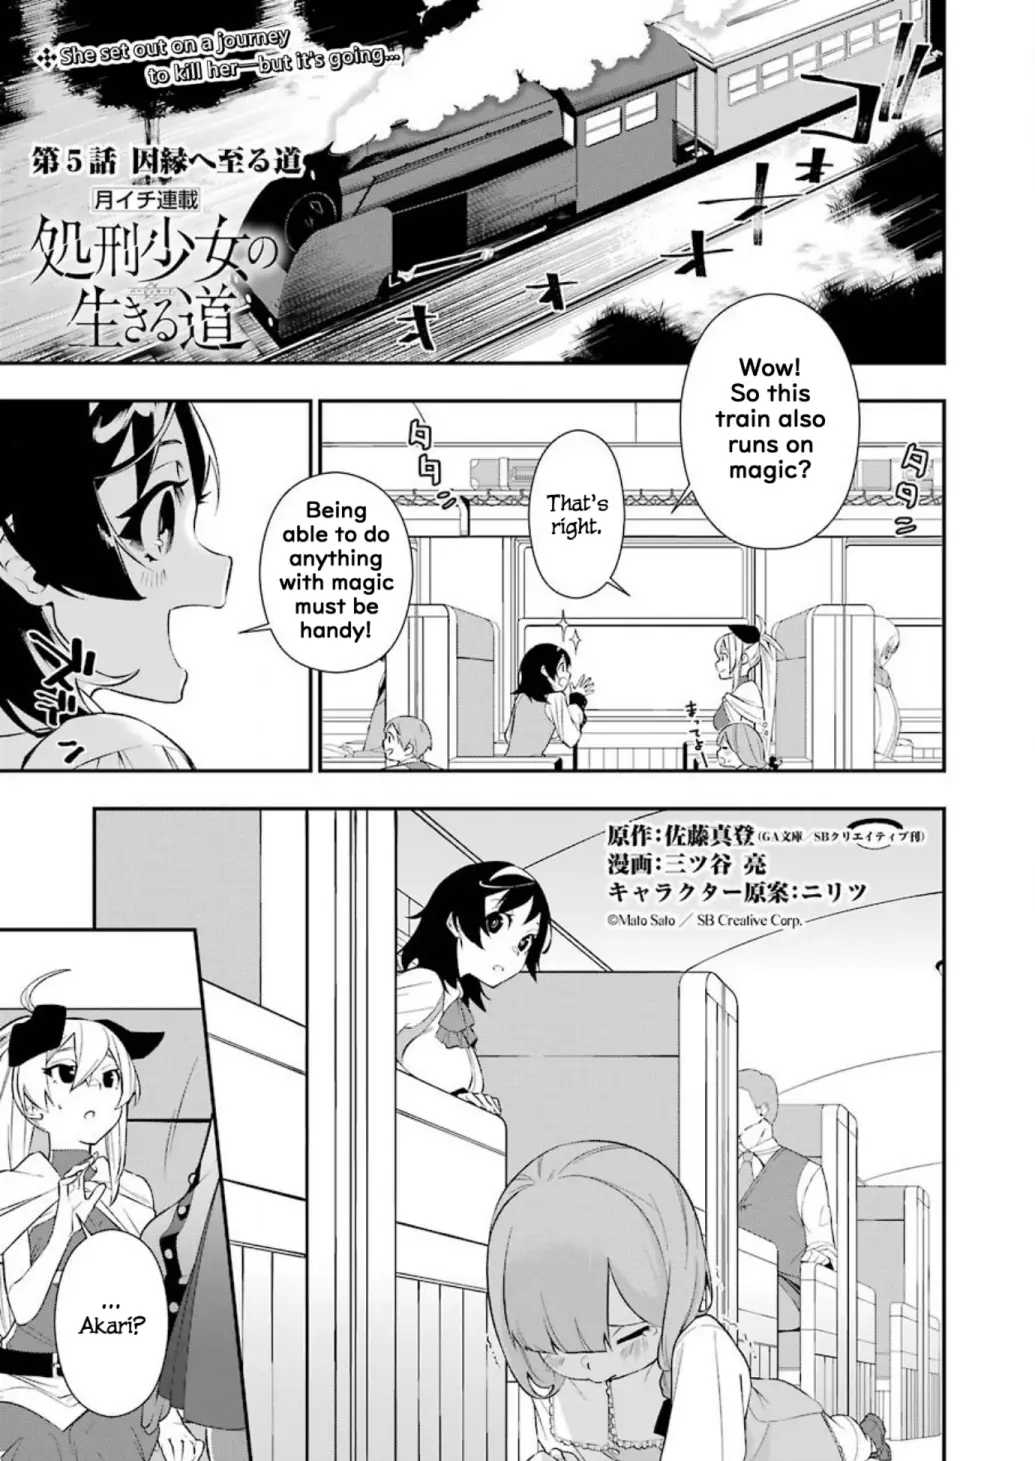 Shokei Shoujo No Ikirumichi - 5 page 1